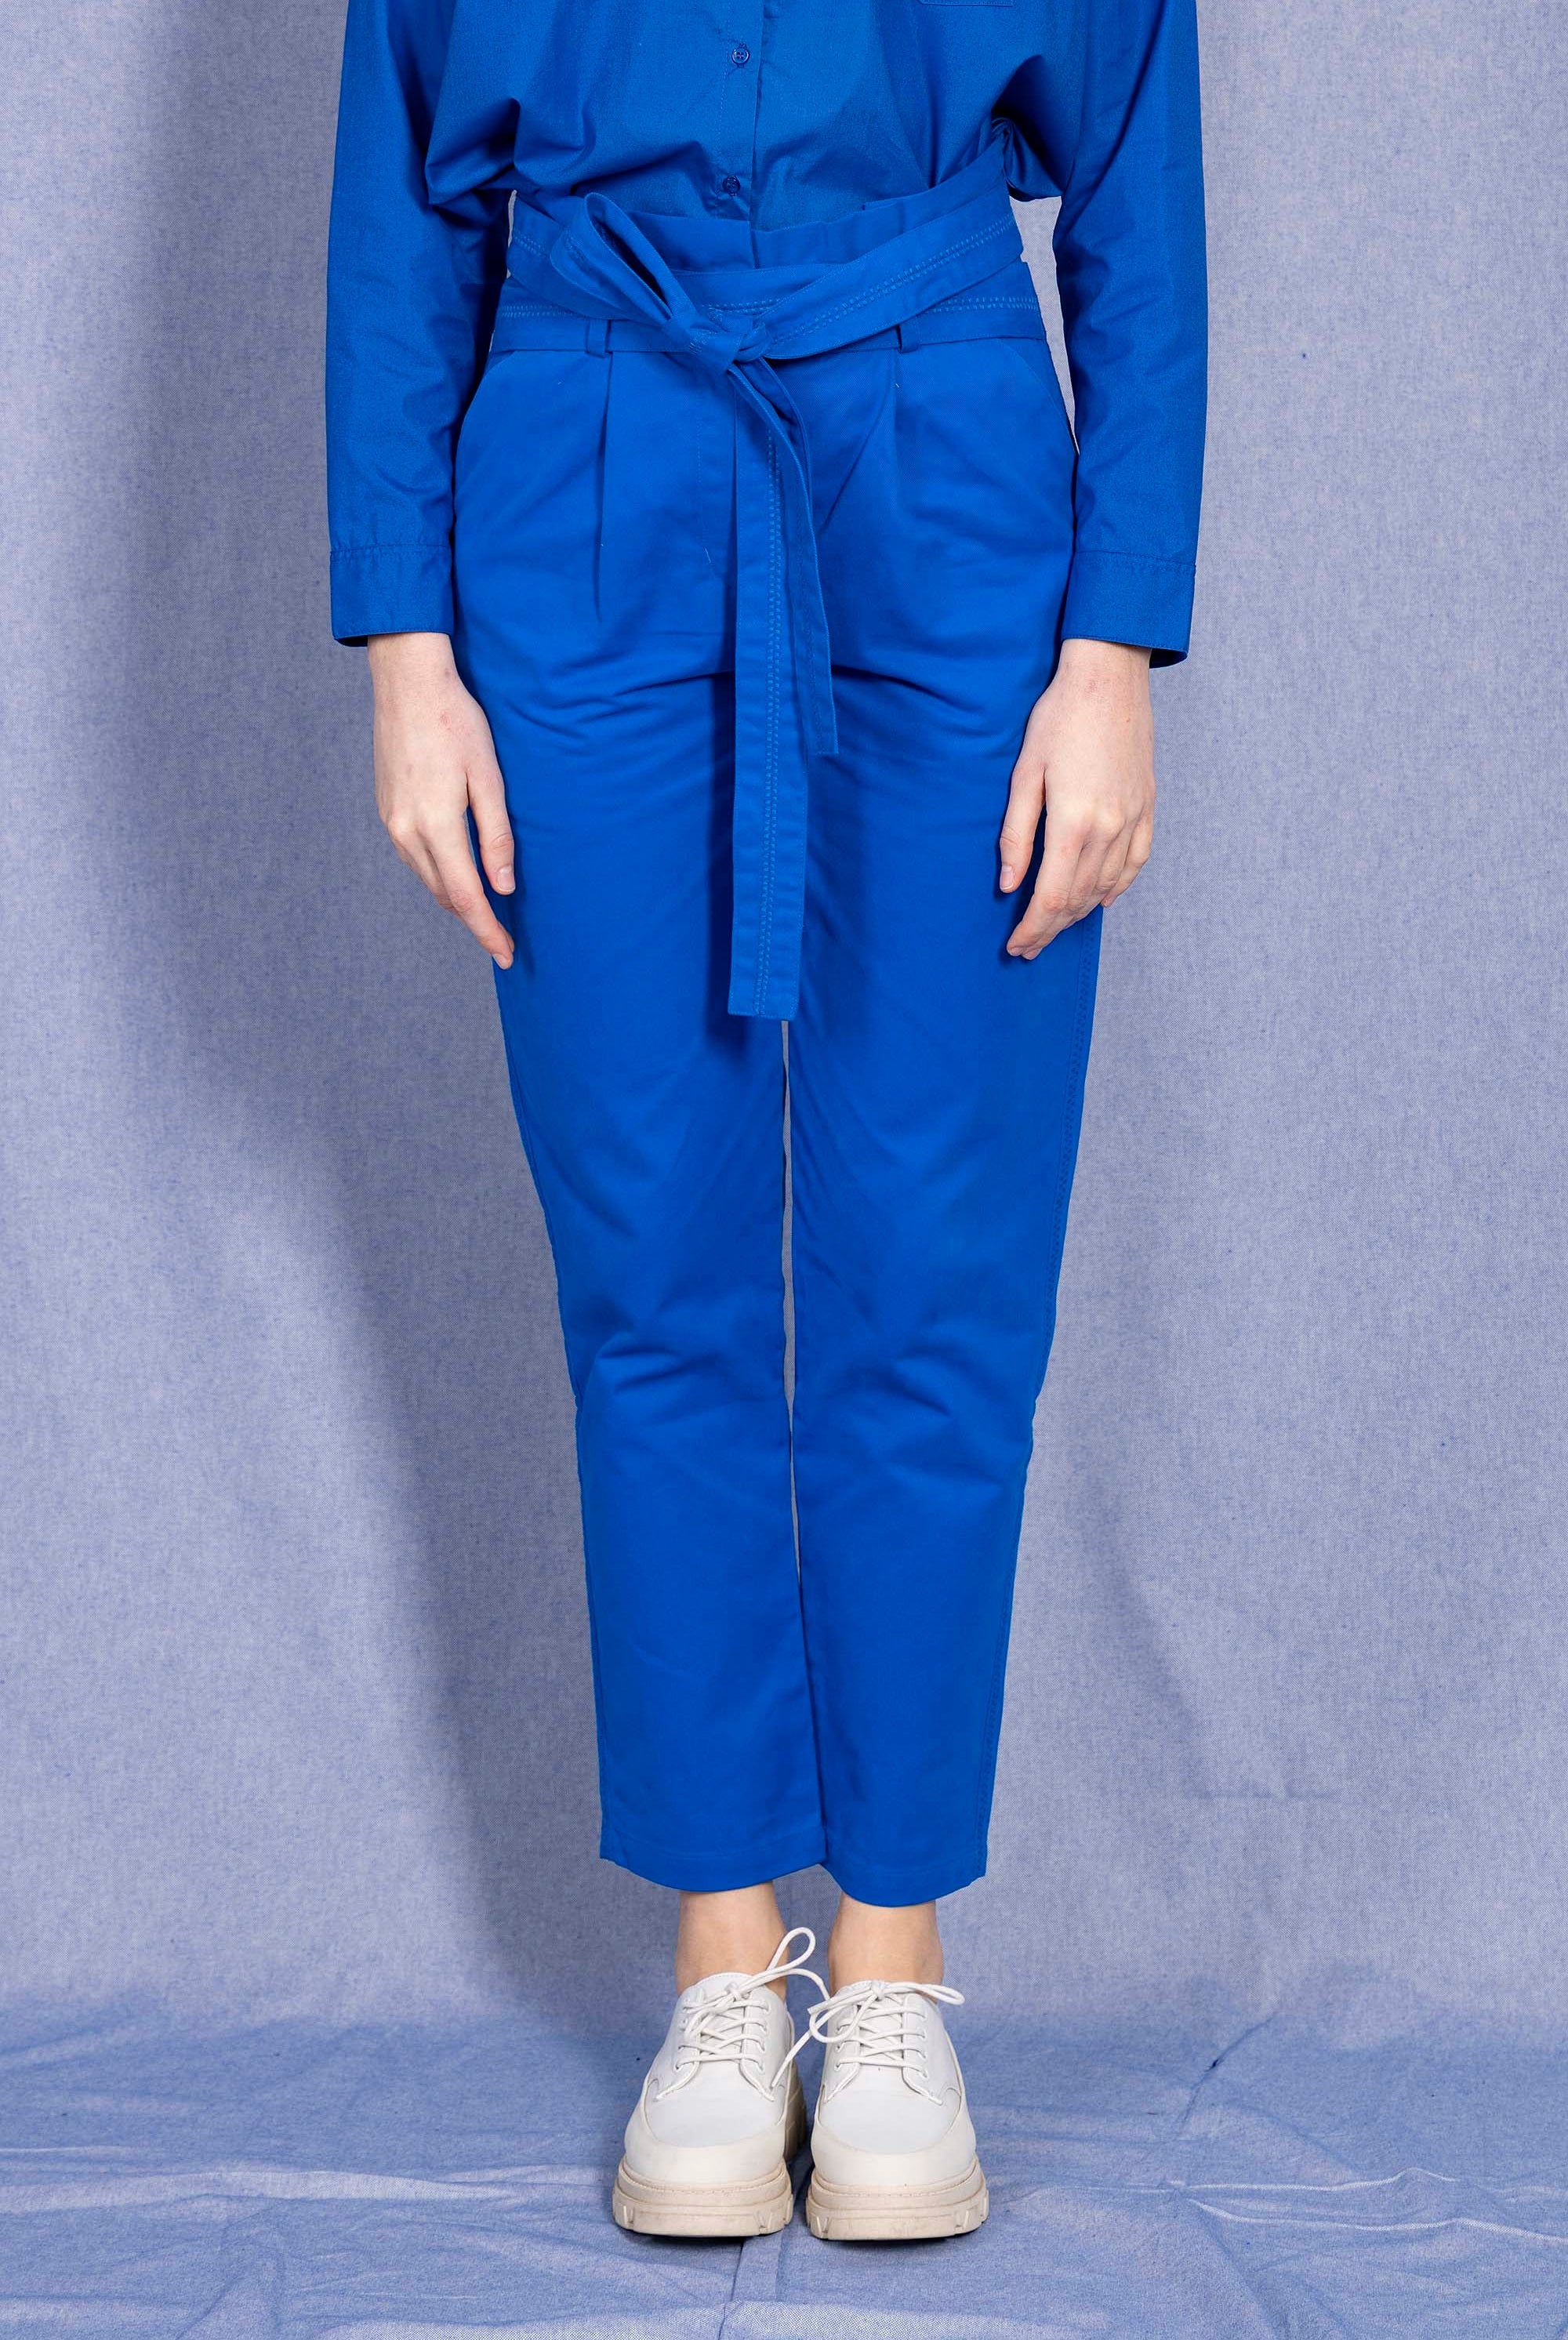 Pantalon Calipso Bleu Saphir minimalisme et détails tendance, coupes classiques et une palette de couleurs neutres